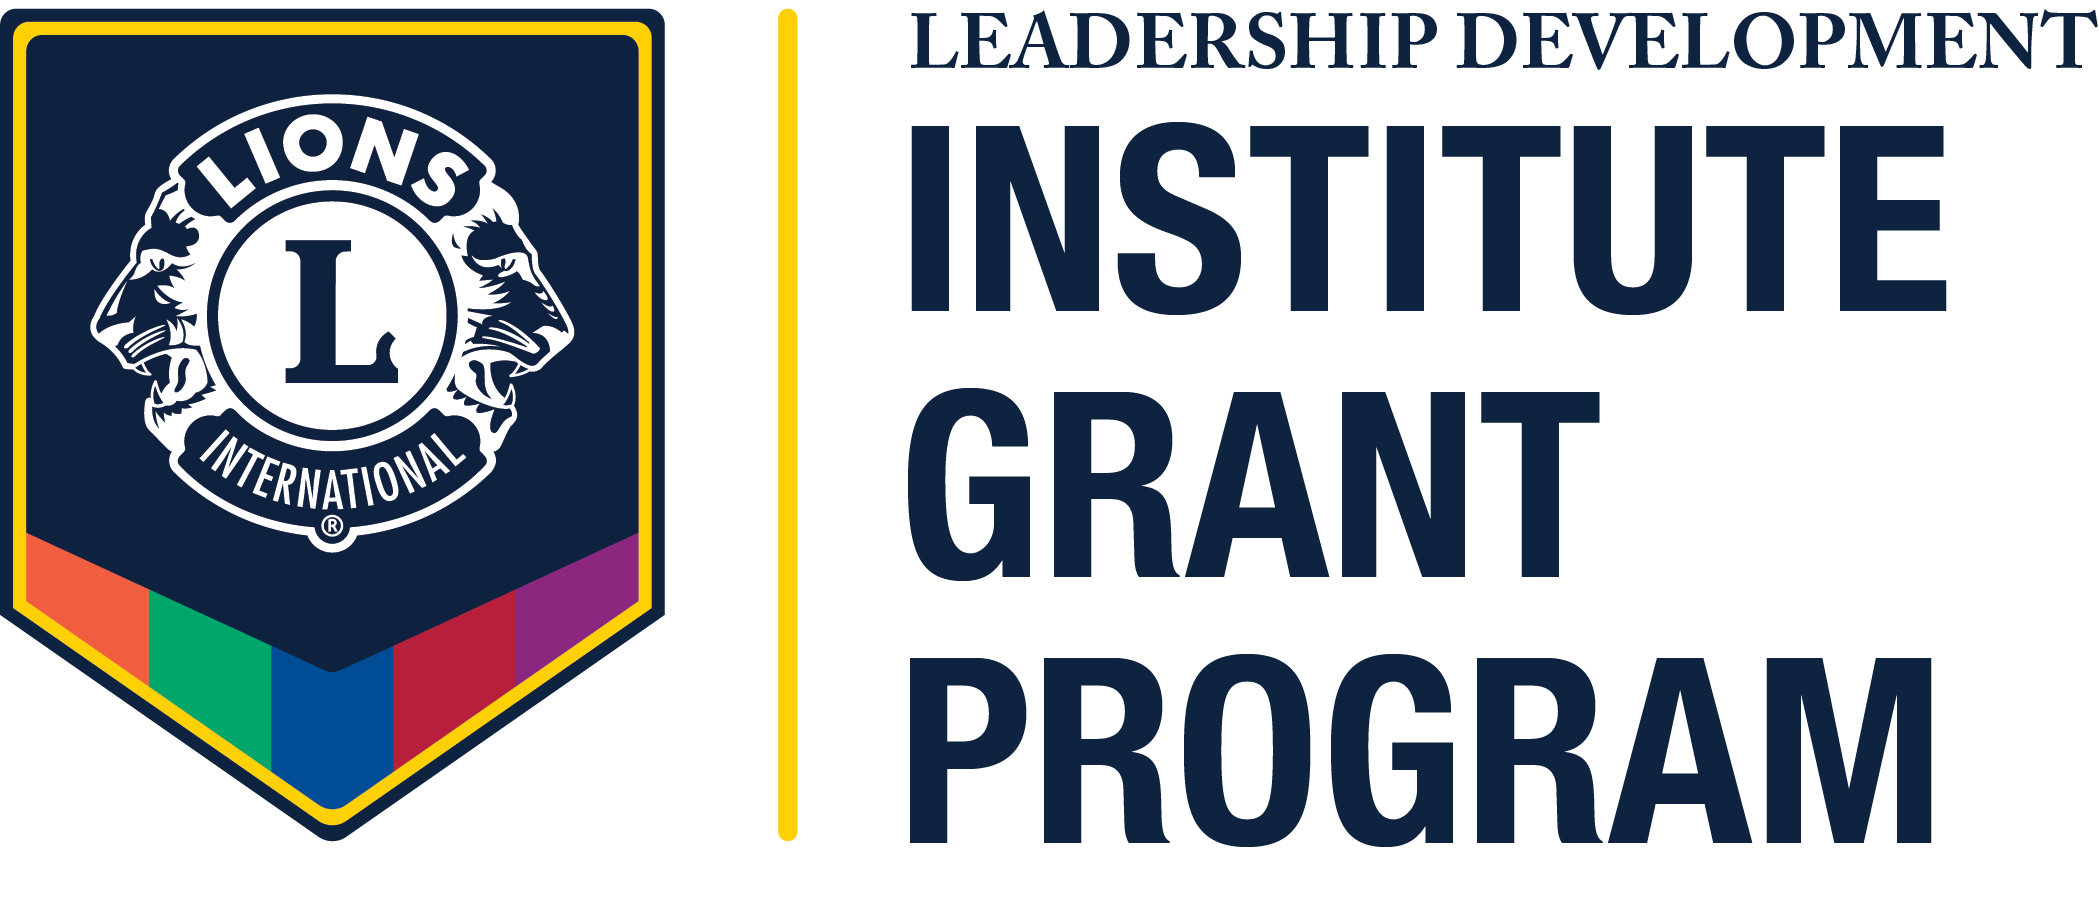 Leadership Development Institutes